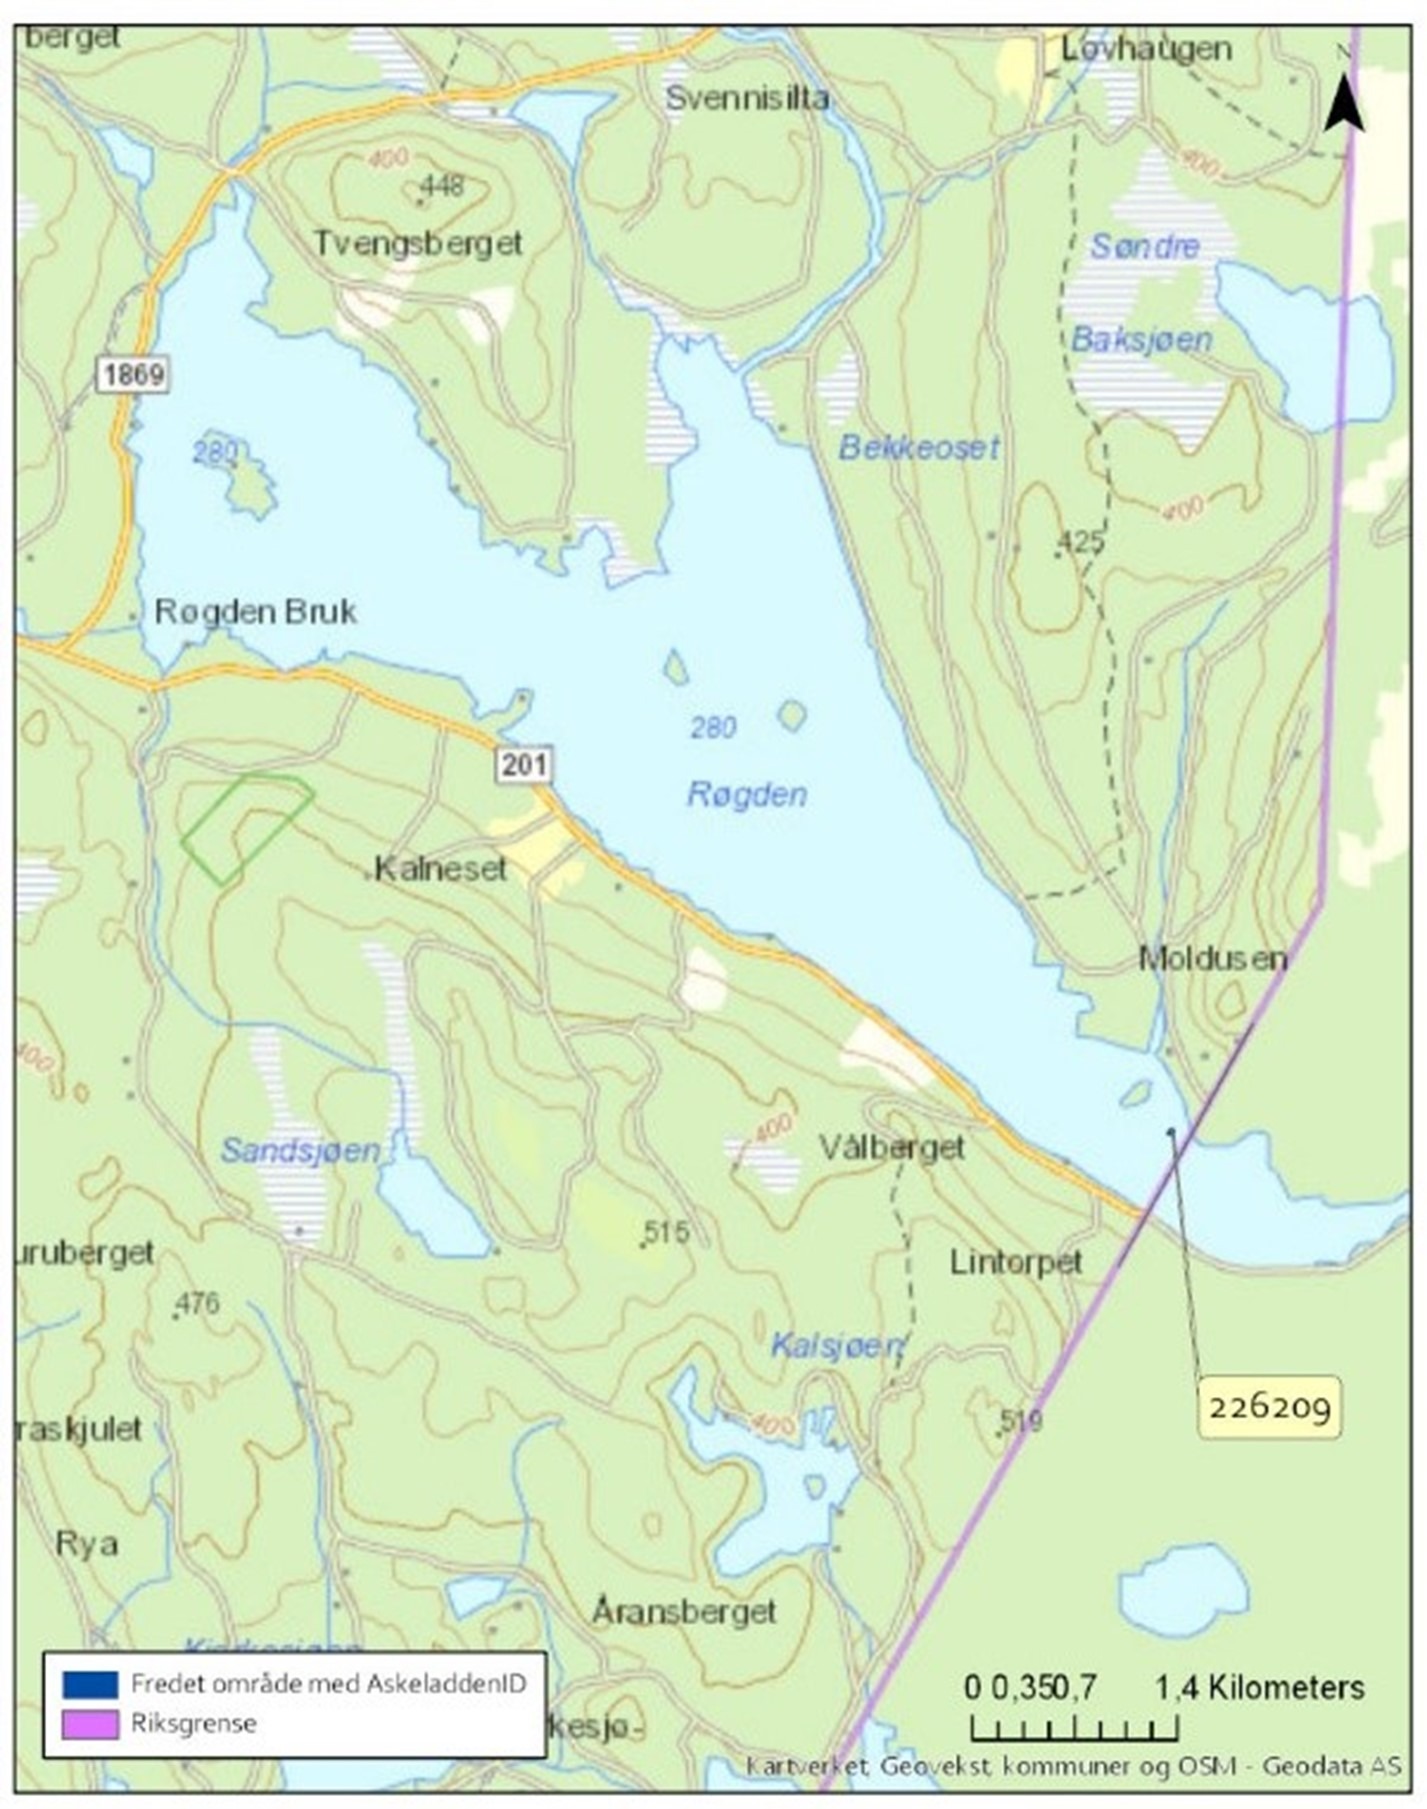 Kartet viser omfang av fredningsforslaget av Akkasari/kjerringholmen